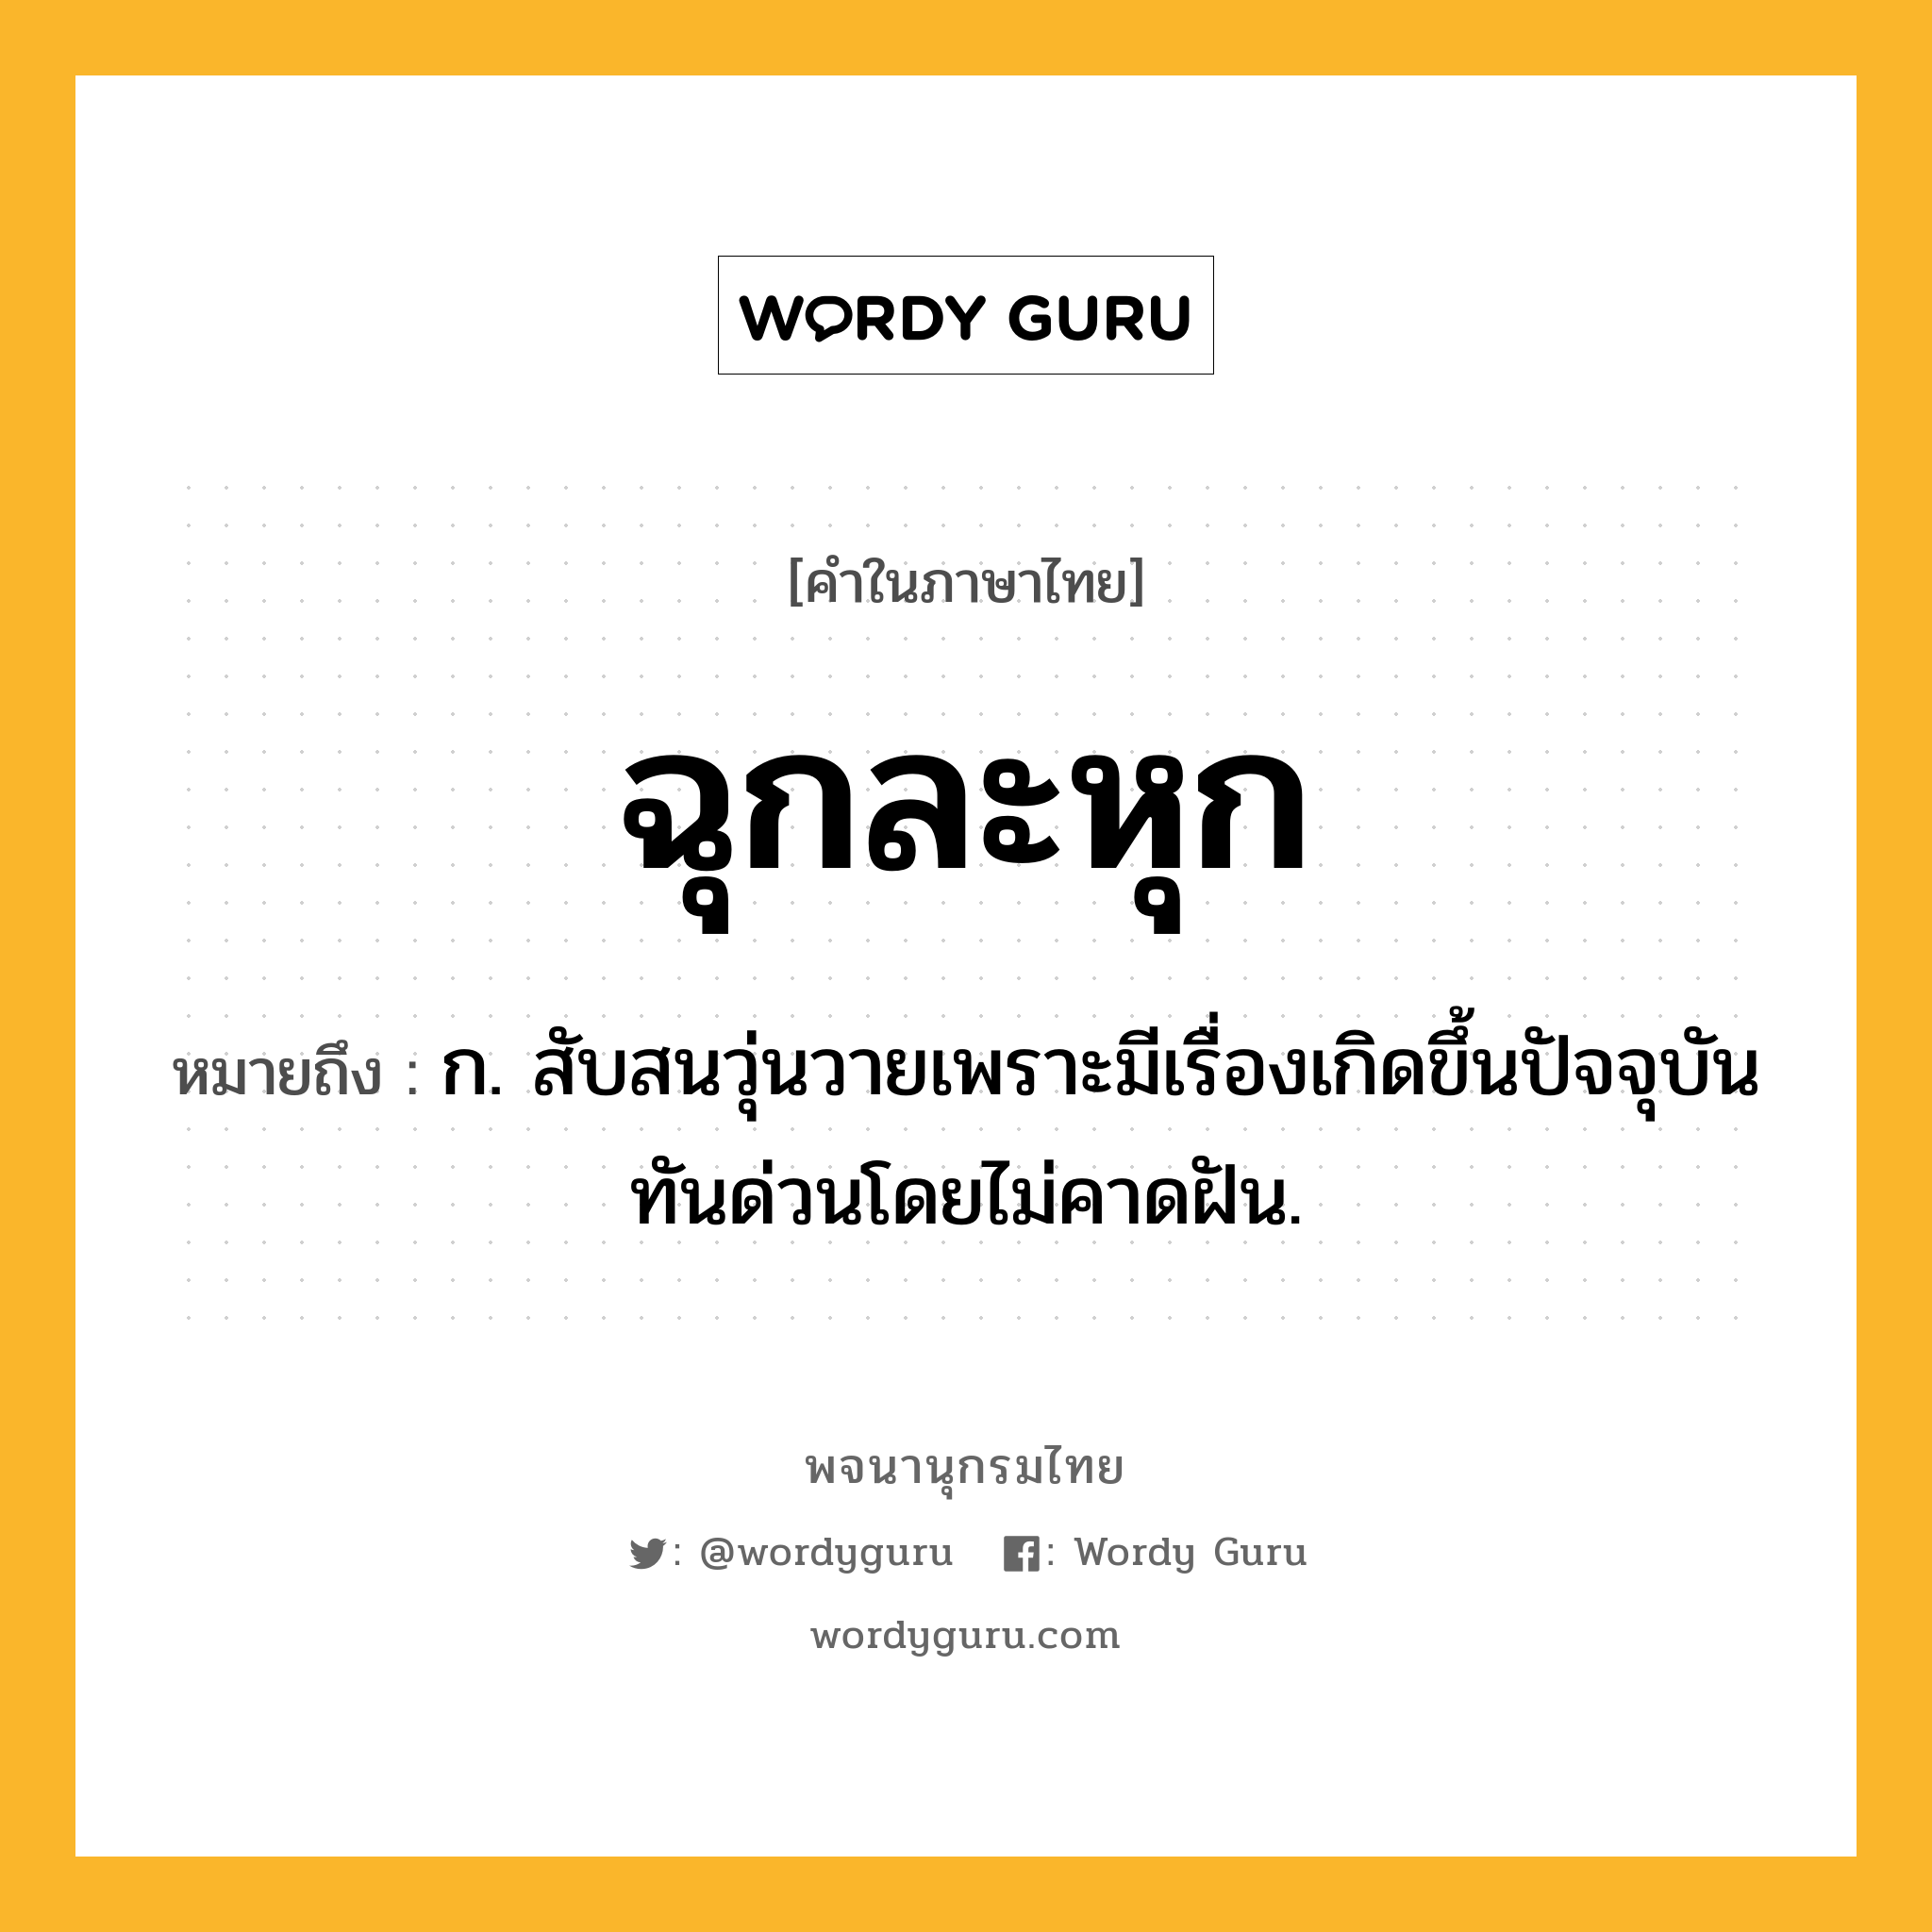 ฉุกละหุก ความหมาย หมายถึงอะไร?, คำในภาษาไทย ฉุกละหุก หมายถึง ก. สับสนวุ่นวายเพราะมีเรื่องเกิดขึ้นปัจจุบันทันด่วนโดยไม่คาดฝัน.